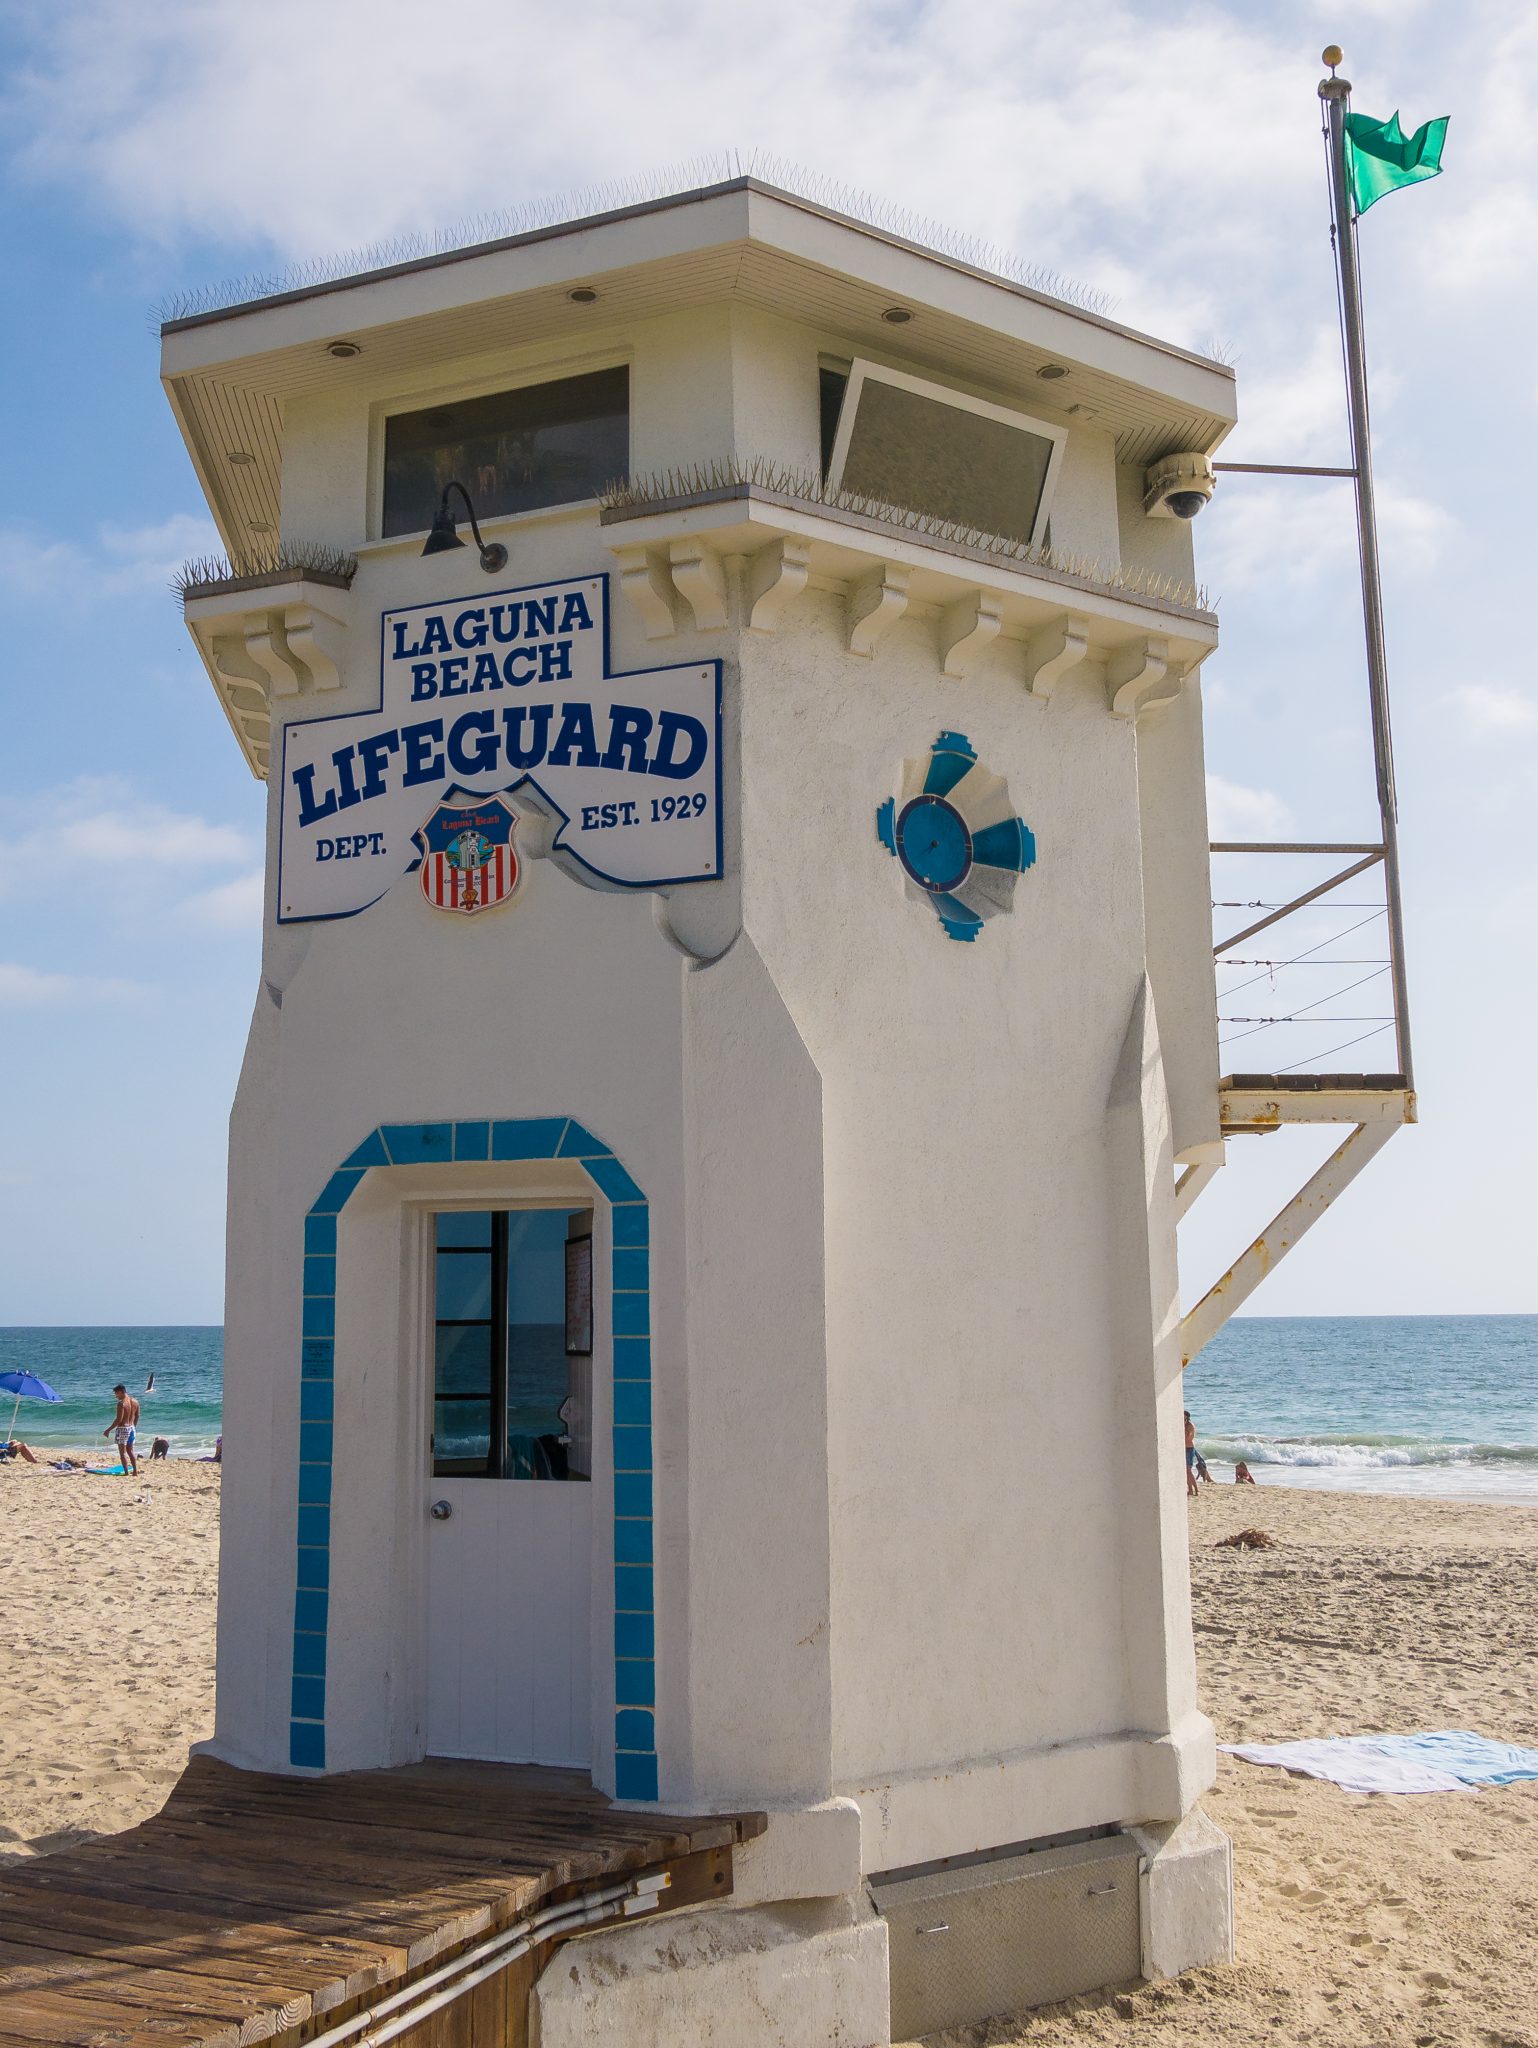 Lifeguard tower in California